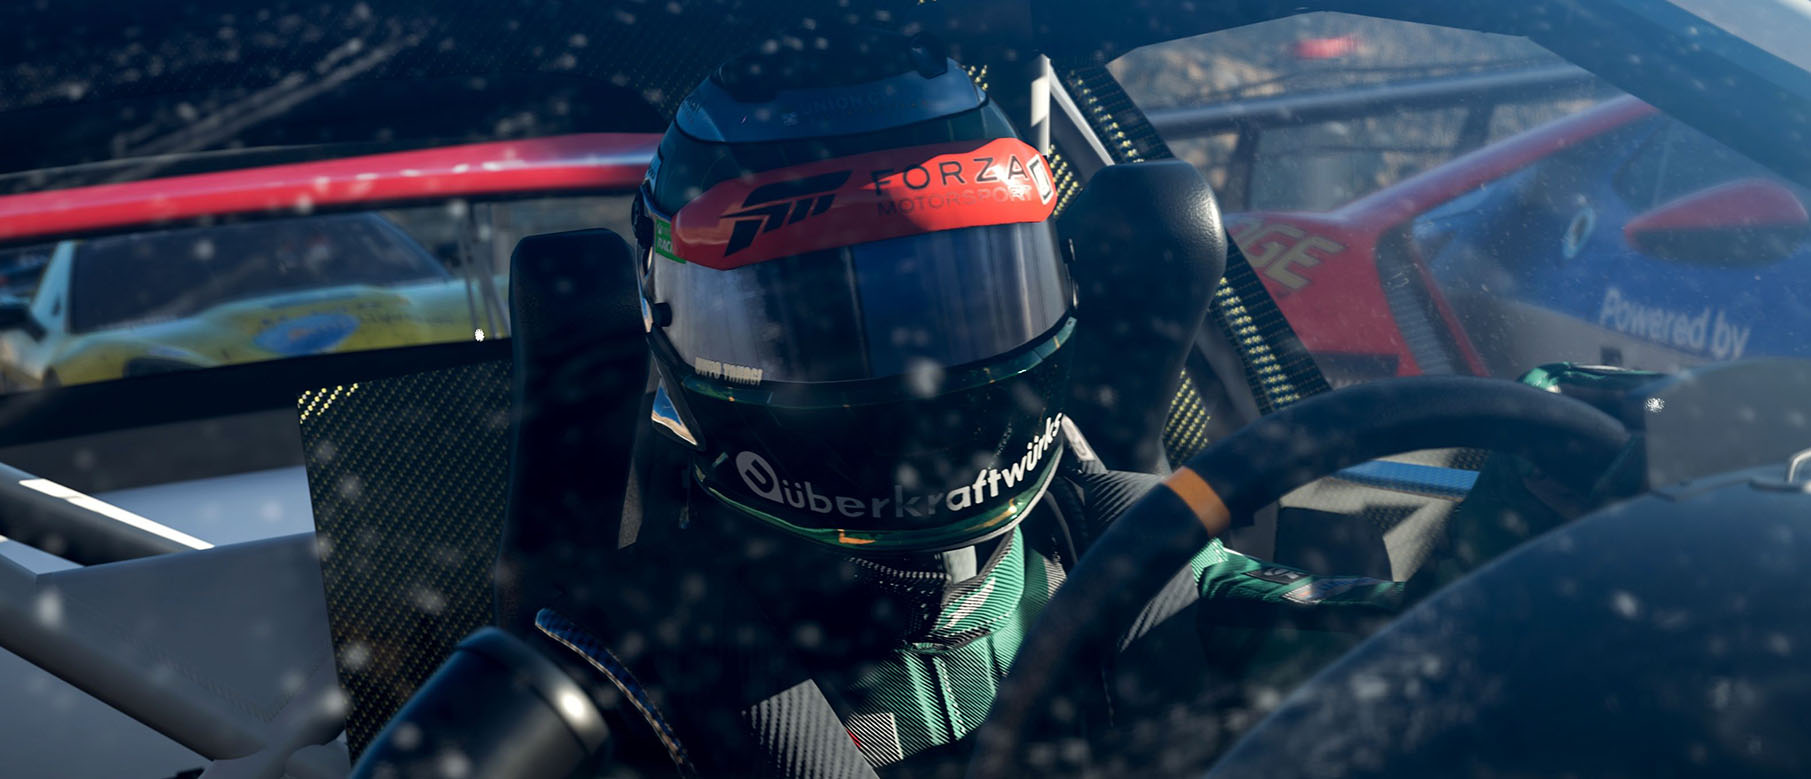 Изображение к Как выглядит смена времени суток и погоды в Forza Motorsport 7